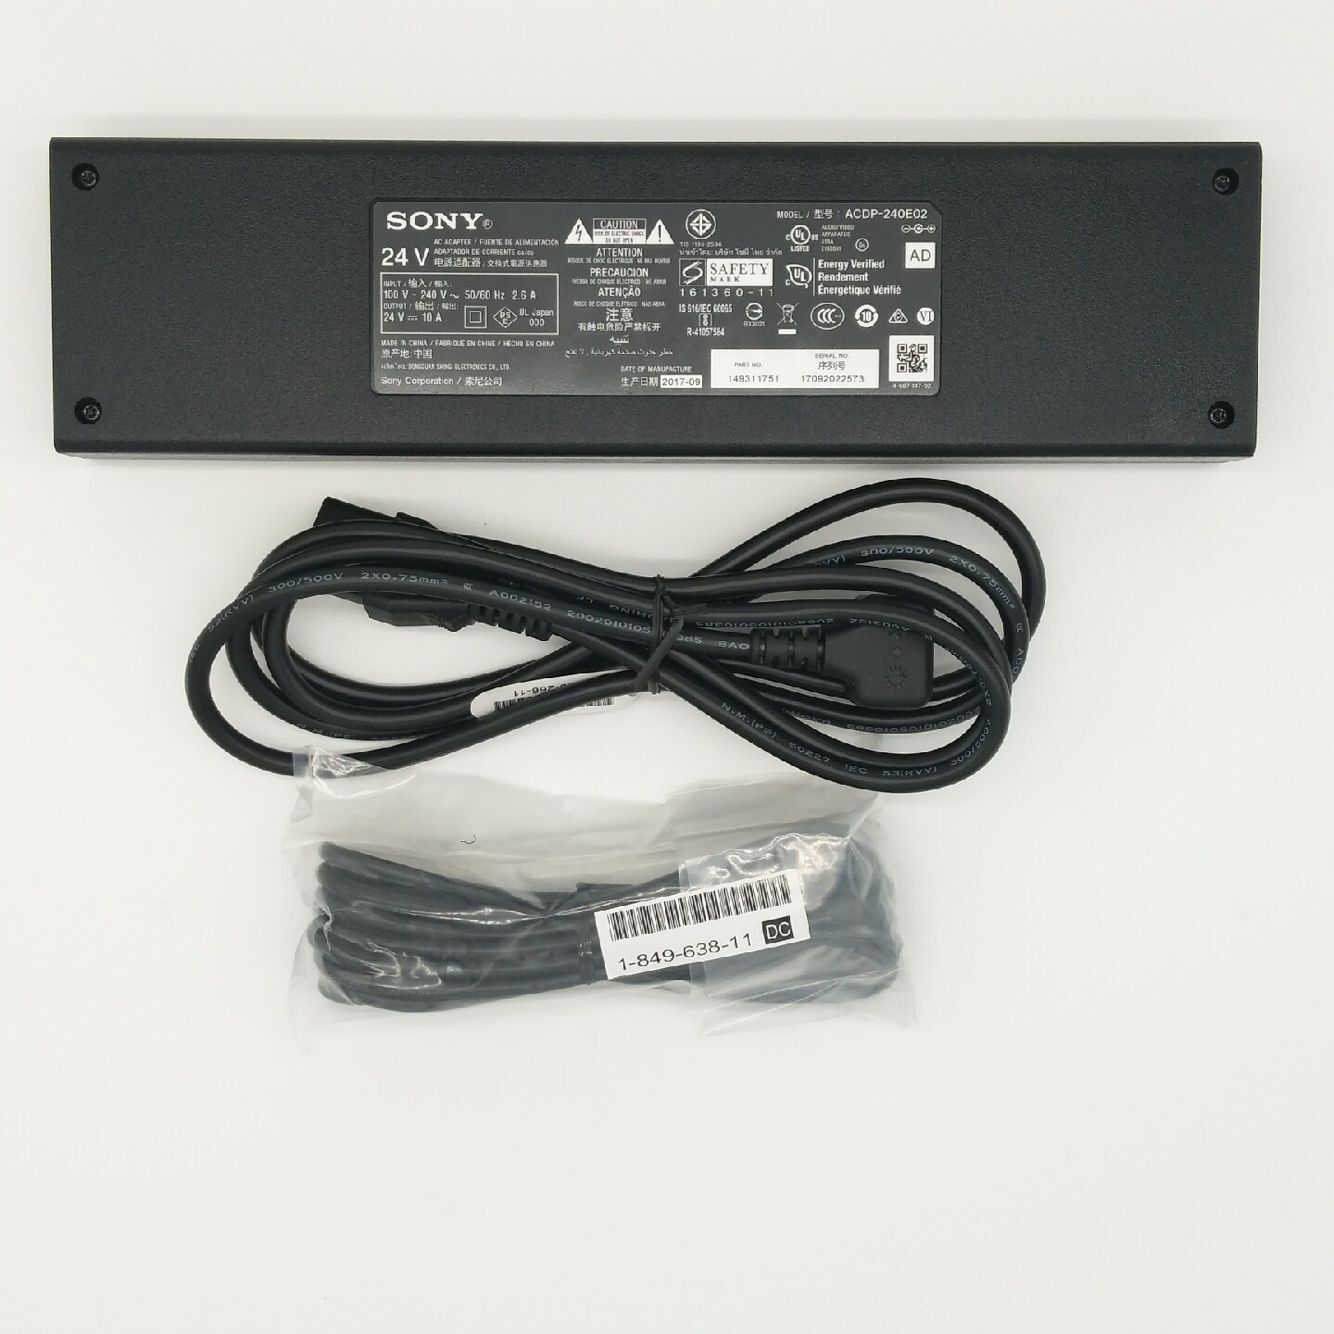 Original 240W Sony 1-493-117-61 acdp-240e02 AC Adaptor